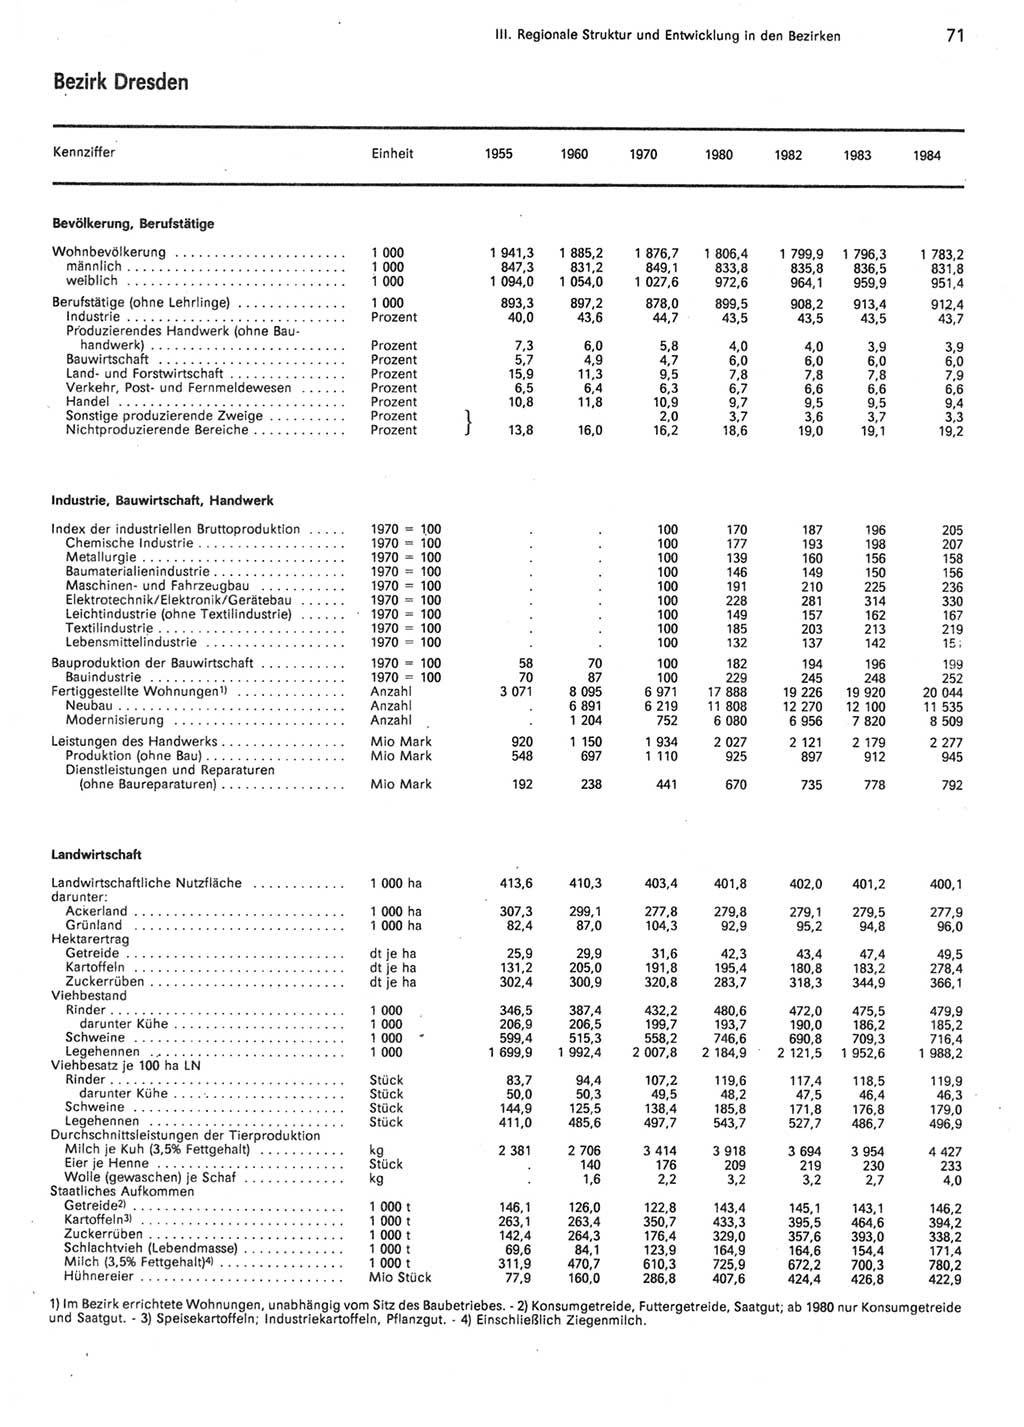 Statistisches Jahrbuch der Deutschen Demokratischen Republik (DDR) 1985, Seite 71 (Stat. Jb. DDR 1985, S. 71)